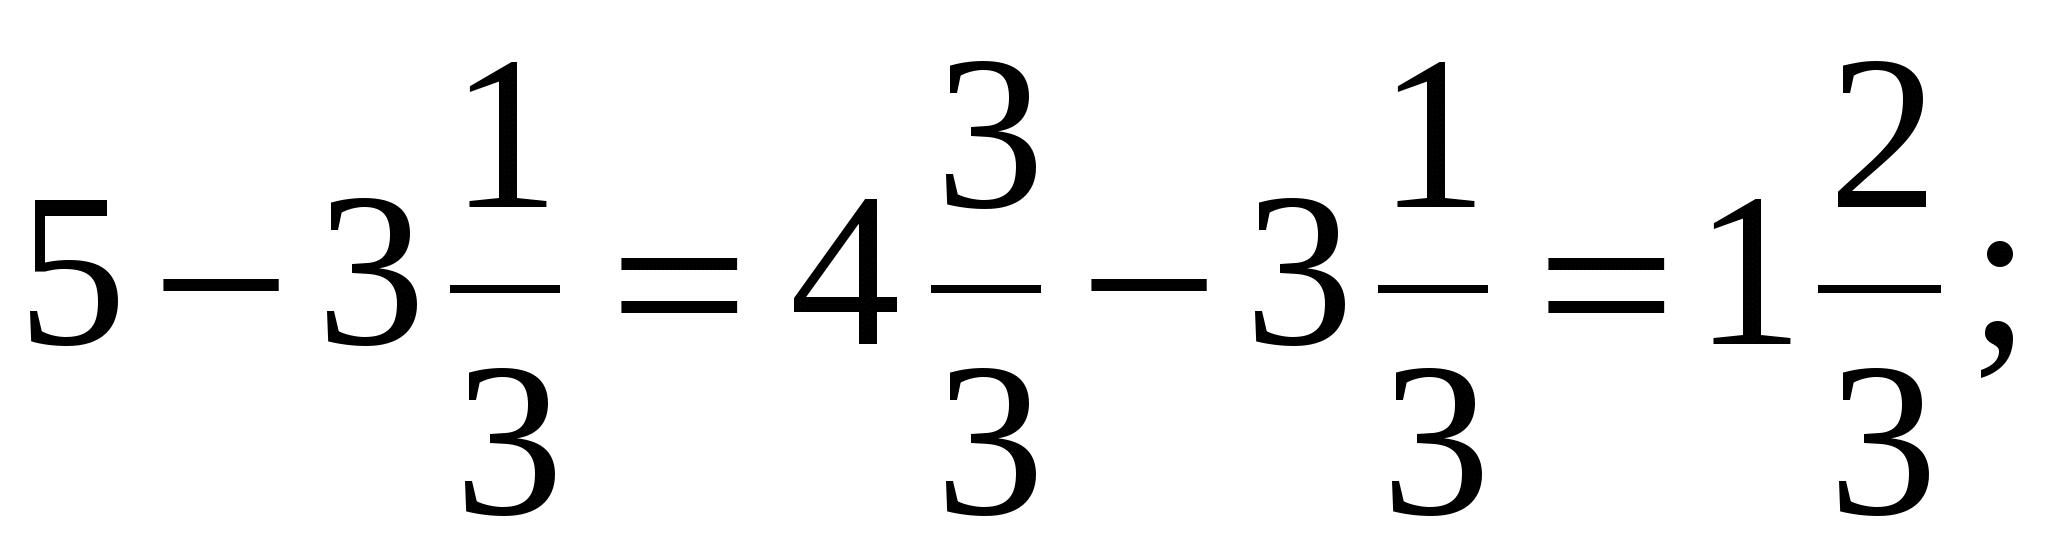 Памятки по математике Как решать сложные уравнения, Как избежать вычислительных ошибок, Как решать задачи на проценты (5 класс)